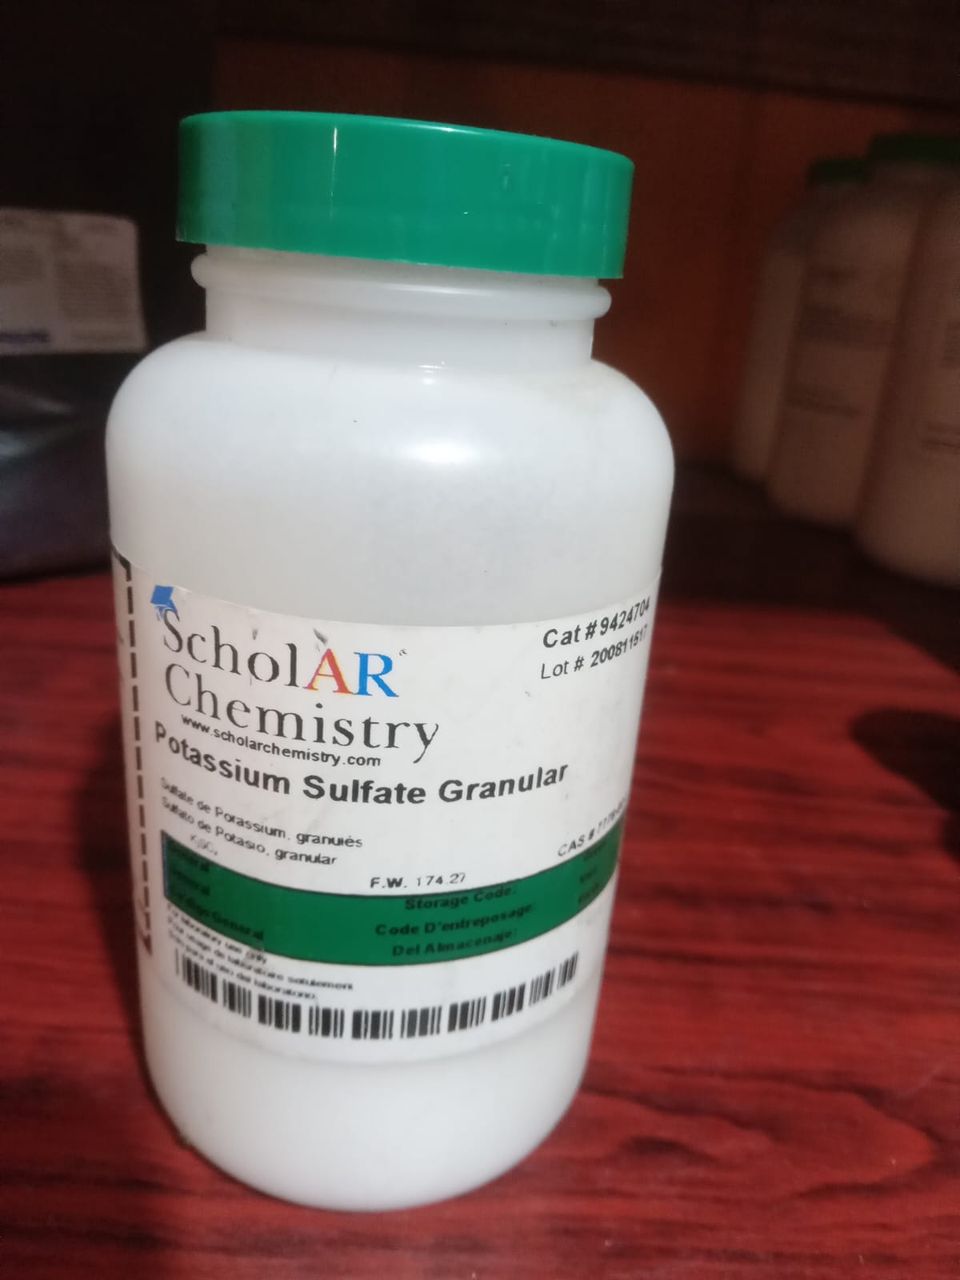 Potassium sulfate granular